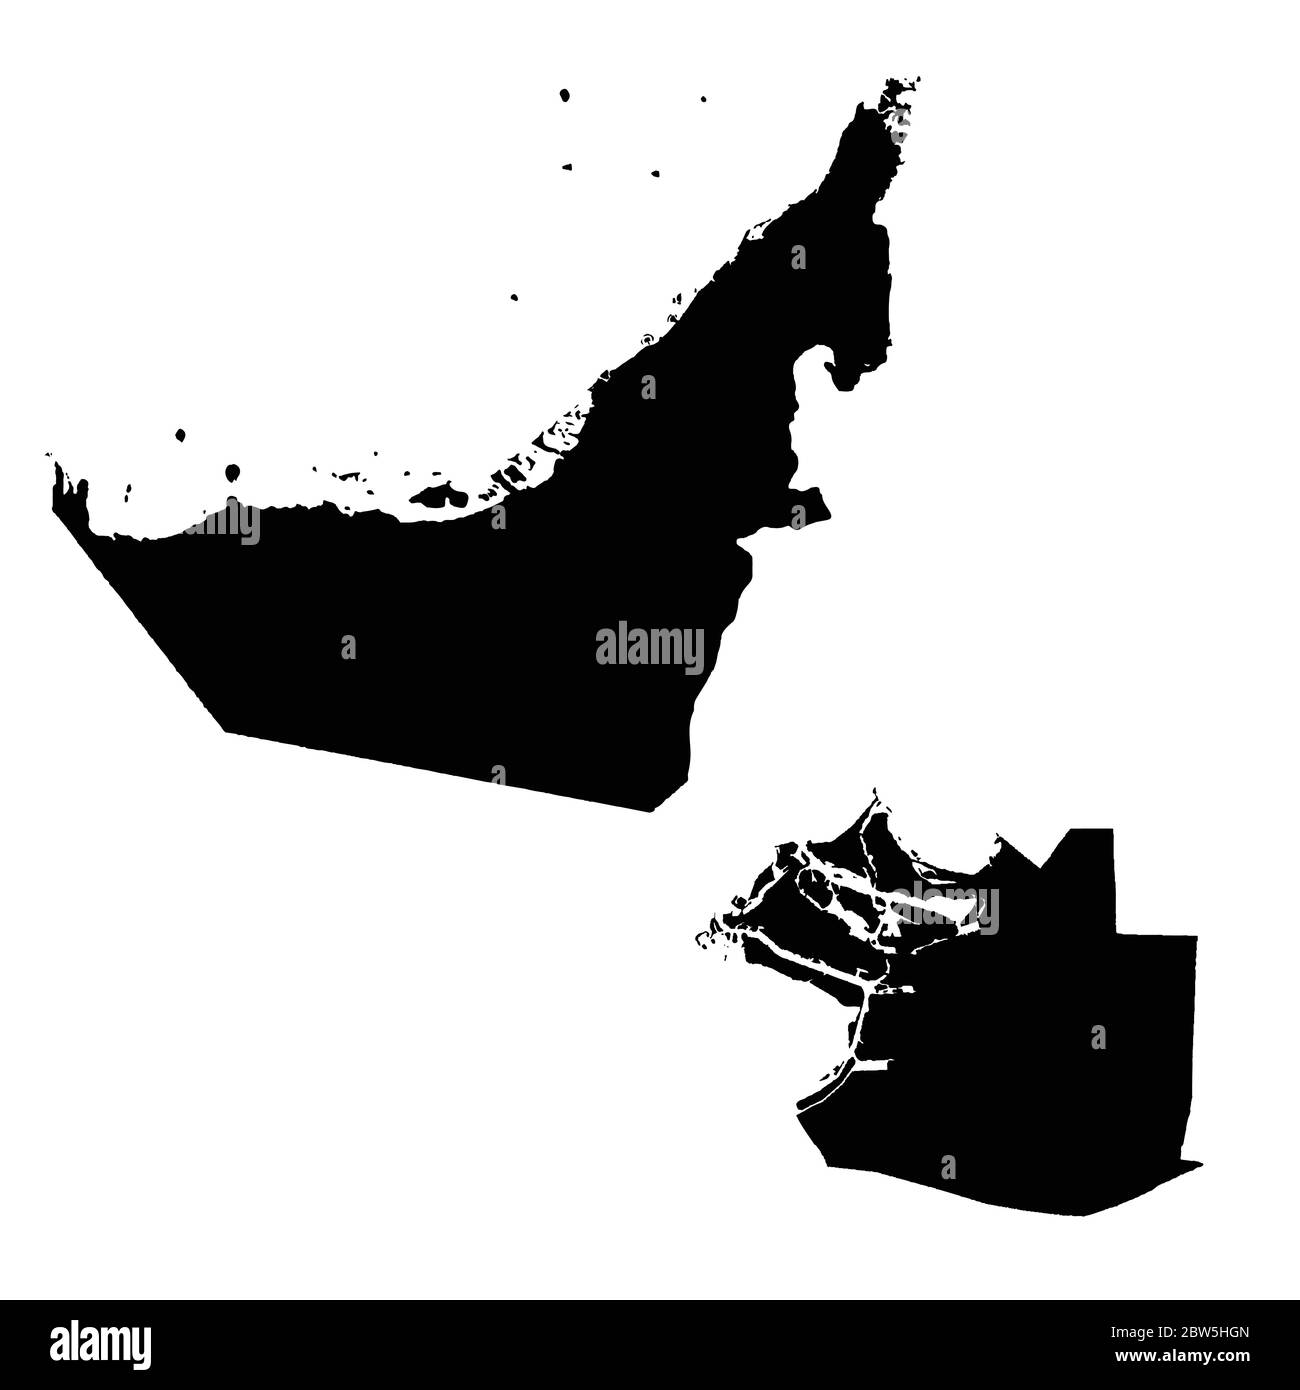 Vektorkarte Vereinigte Arabische Emirate und Abu Dhabi. Land und Hauptstadt. Isolierte Vektorgrafik. Schwarz auf weißem Hintergrund. EPS 10-Abbildung. Stock Vektor